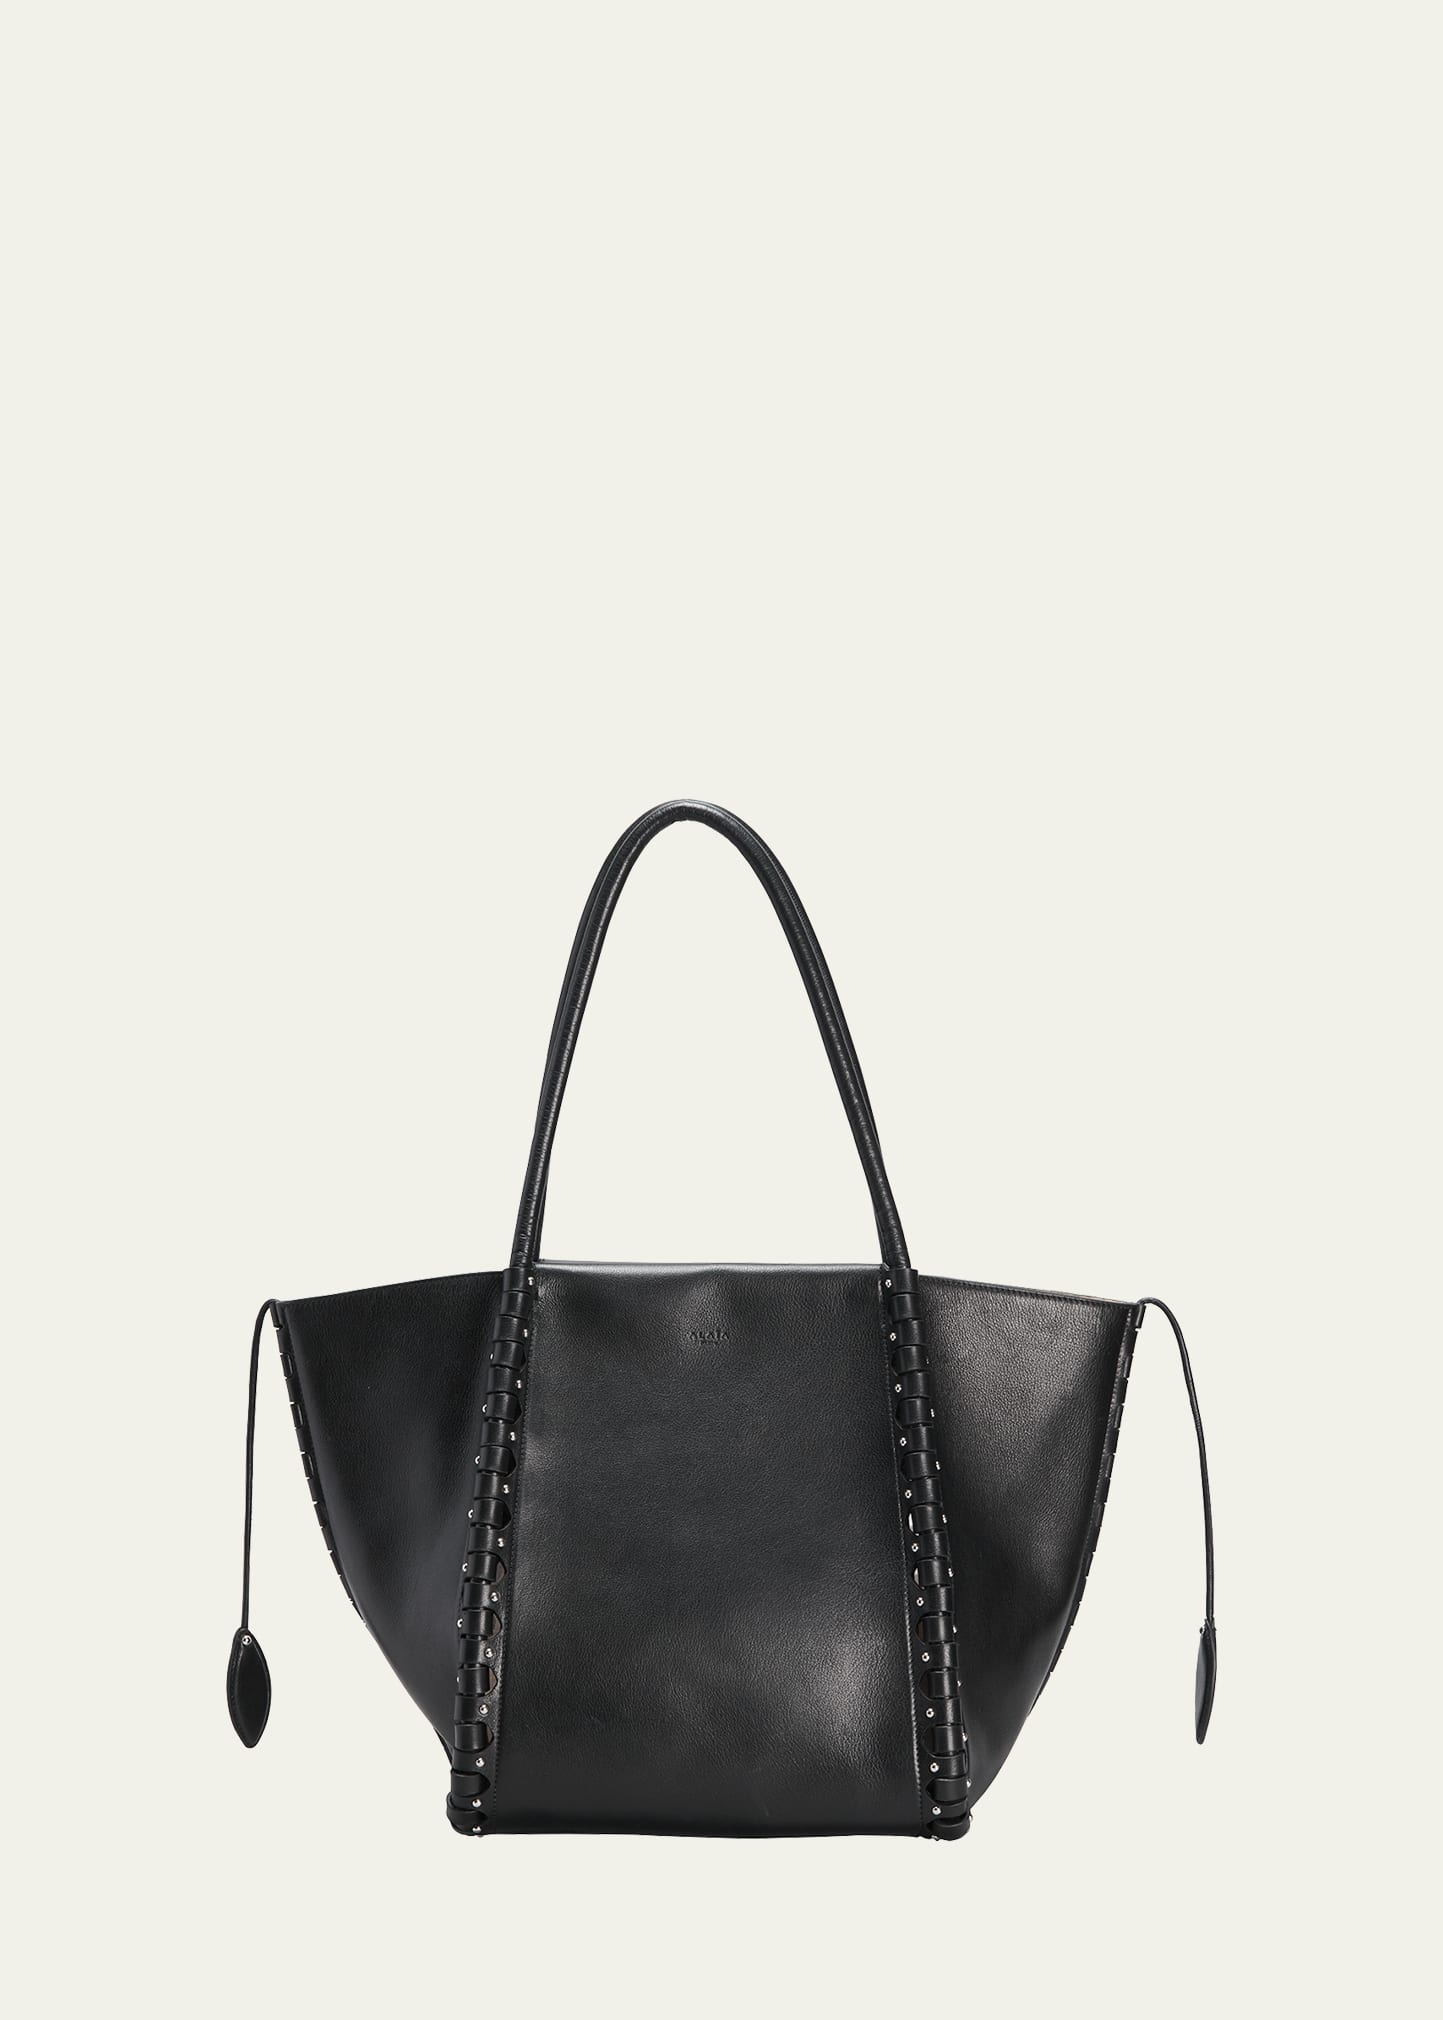 ALAÏA Bags for Women | ModeSens